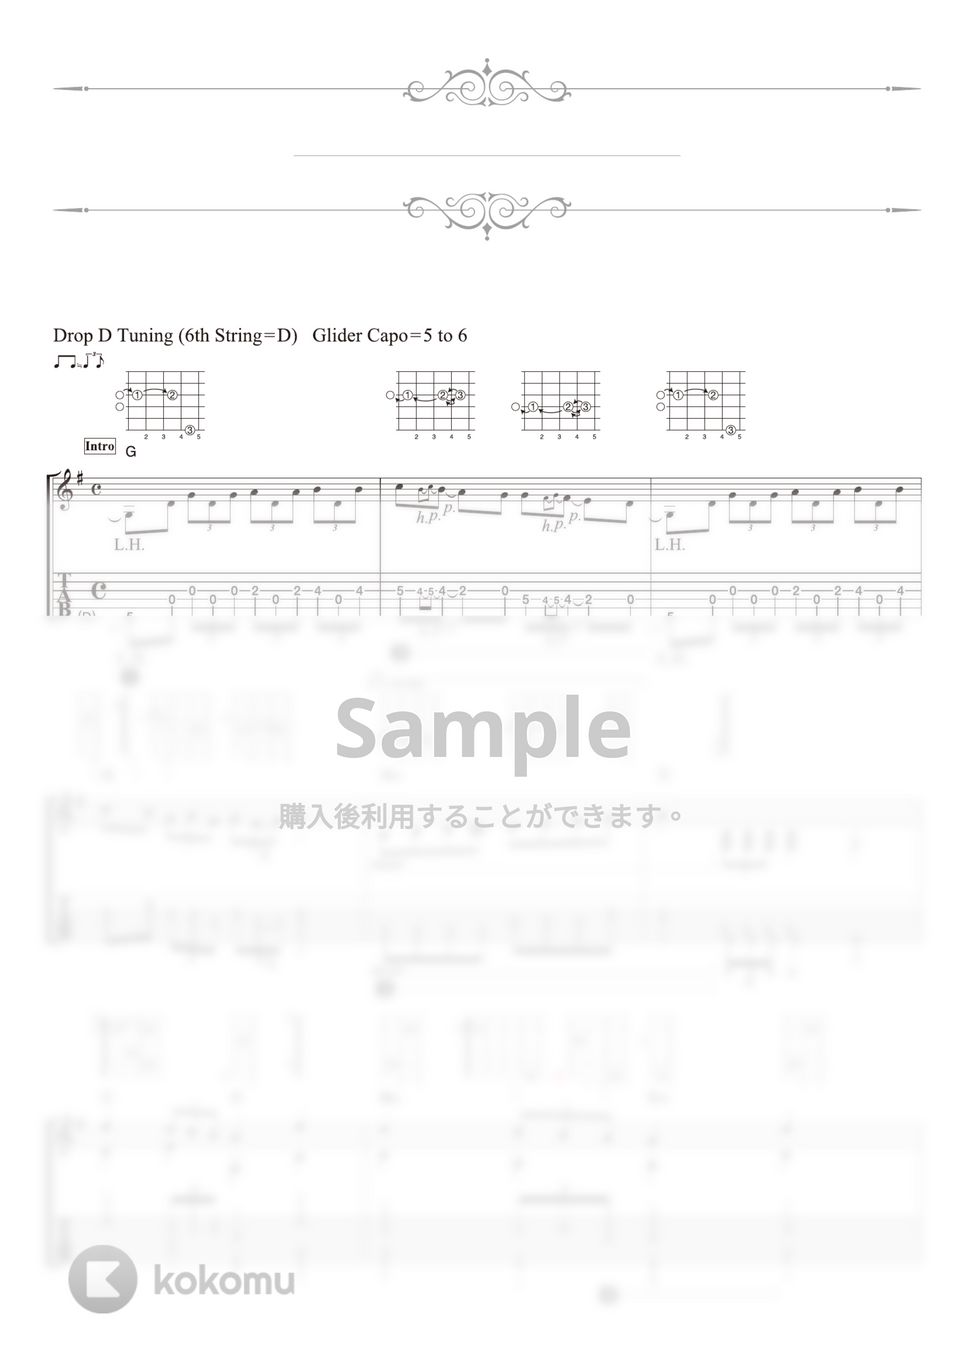 となりのトトロ - さんぽ (ソロギター) by 南澤大介